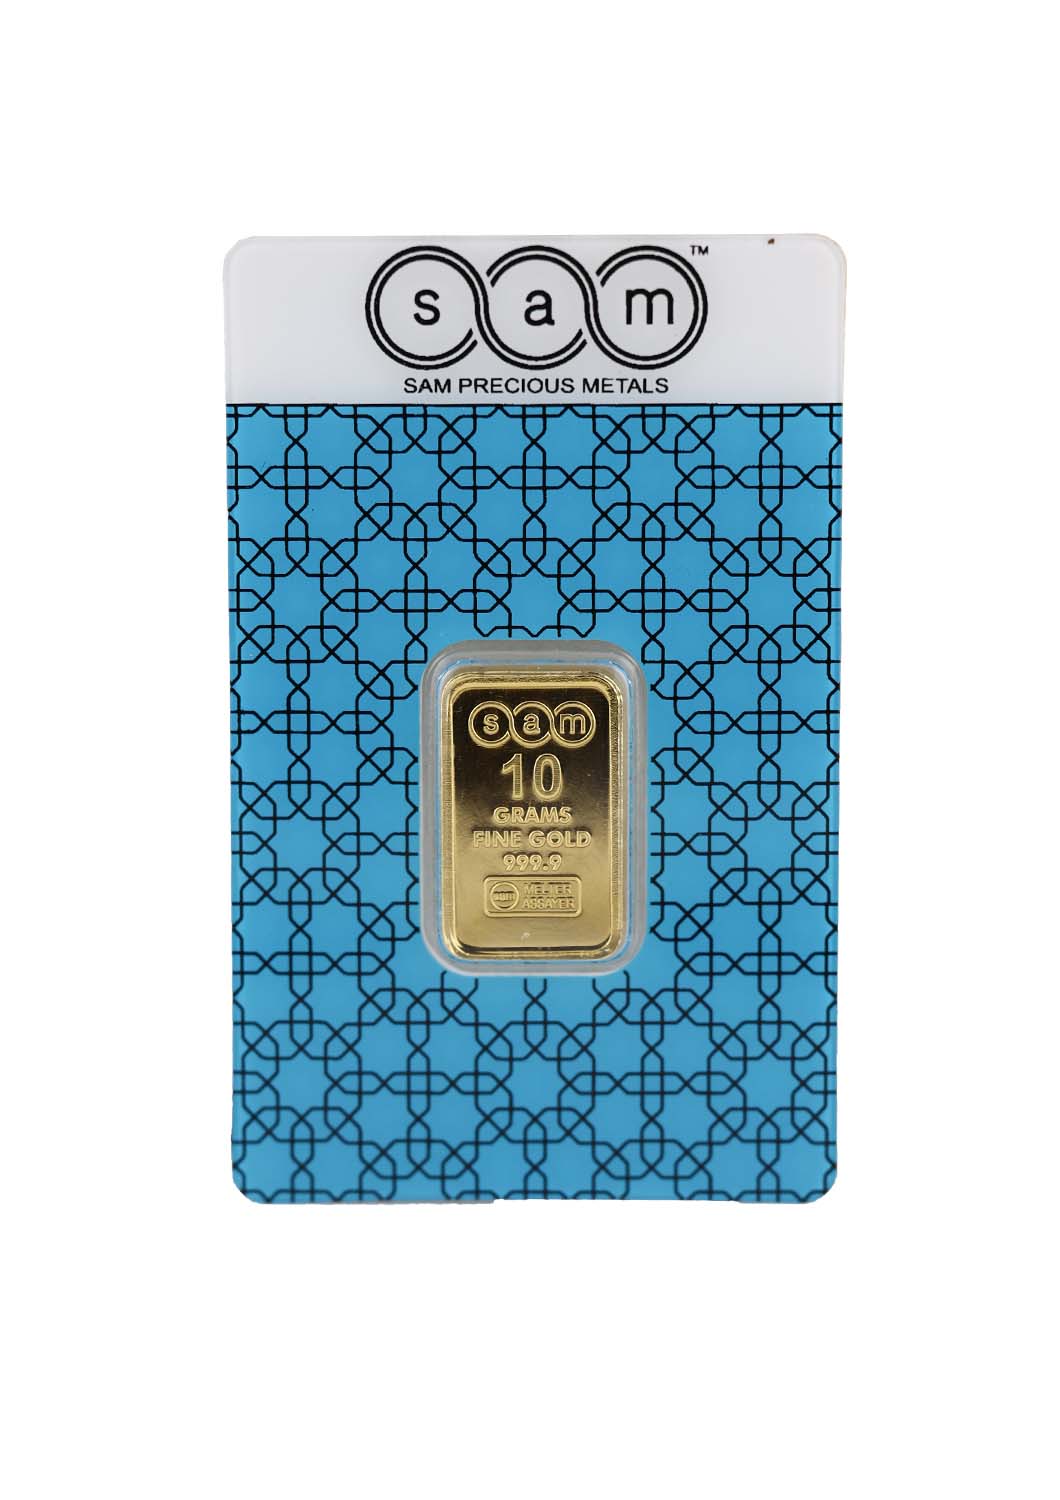 Sam Gold Bar 10 grams of pure gold, purity 999.9 - 10 grams - Saleh Sallom